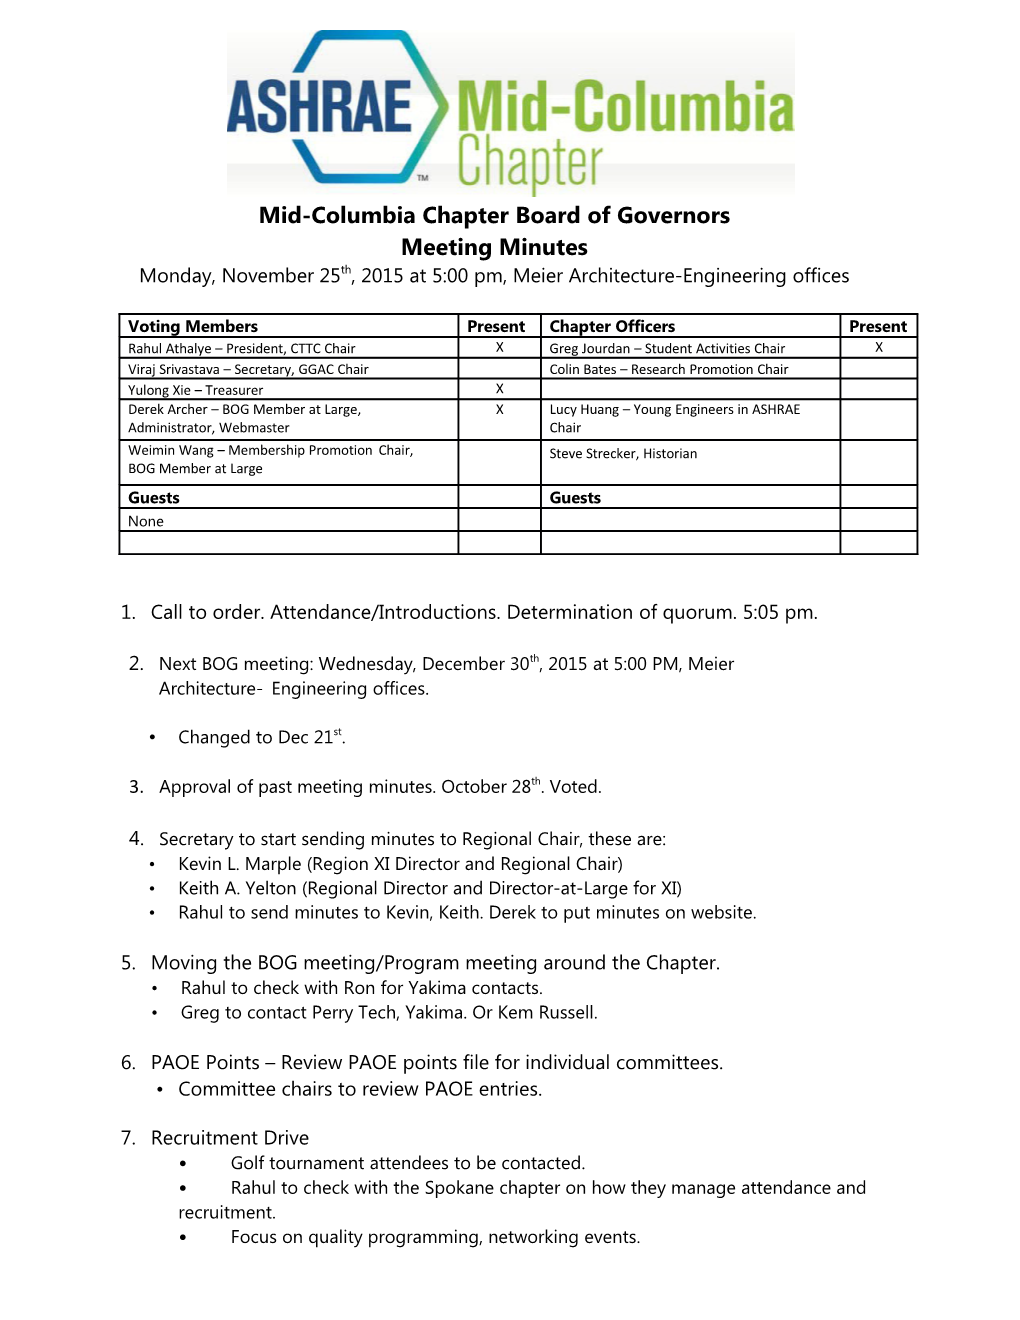 Midcolumbia BOG Meeting Agenda Sep30 2015 Tentative